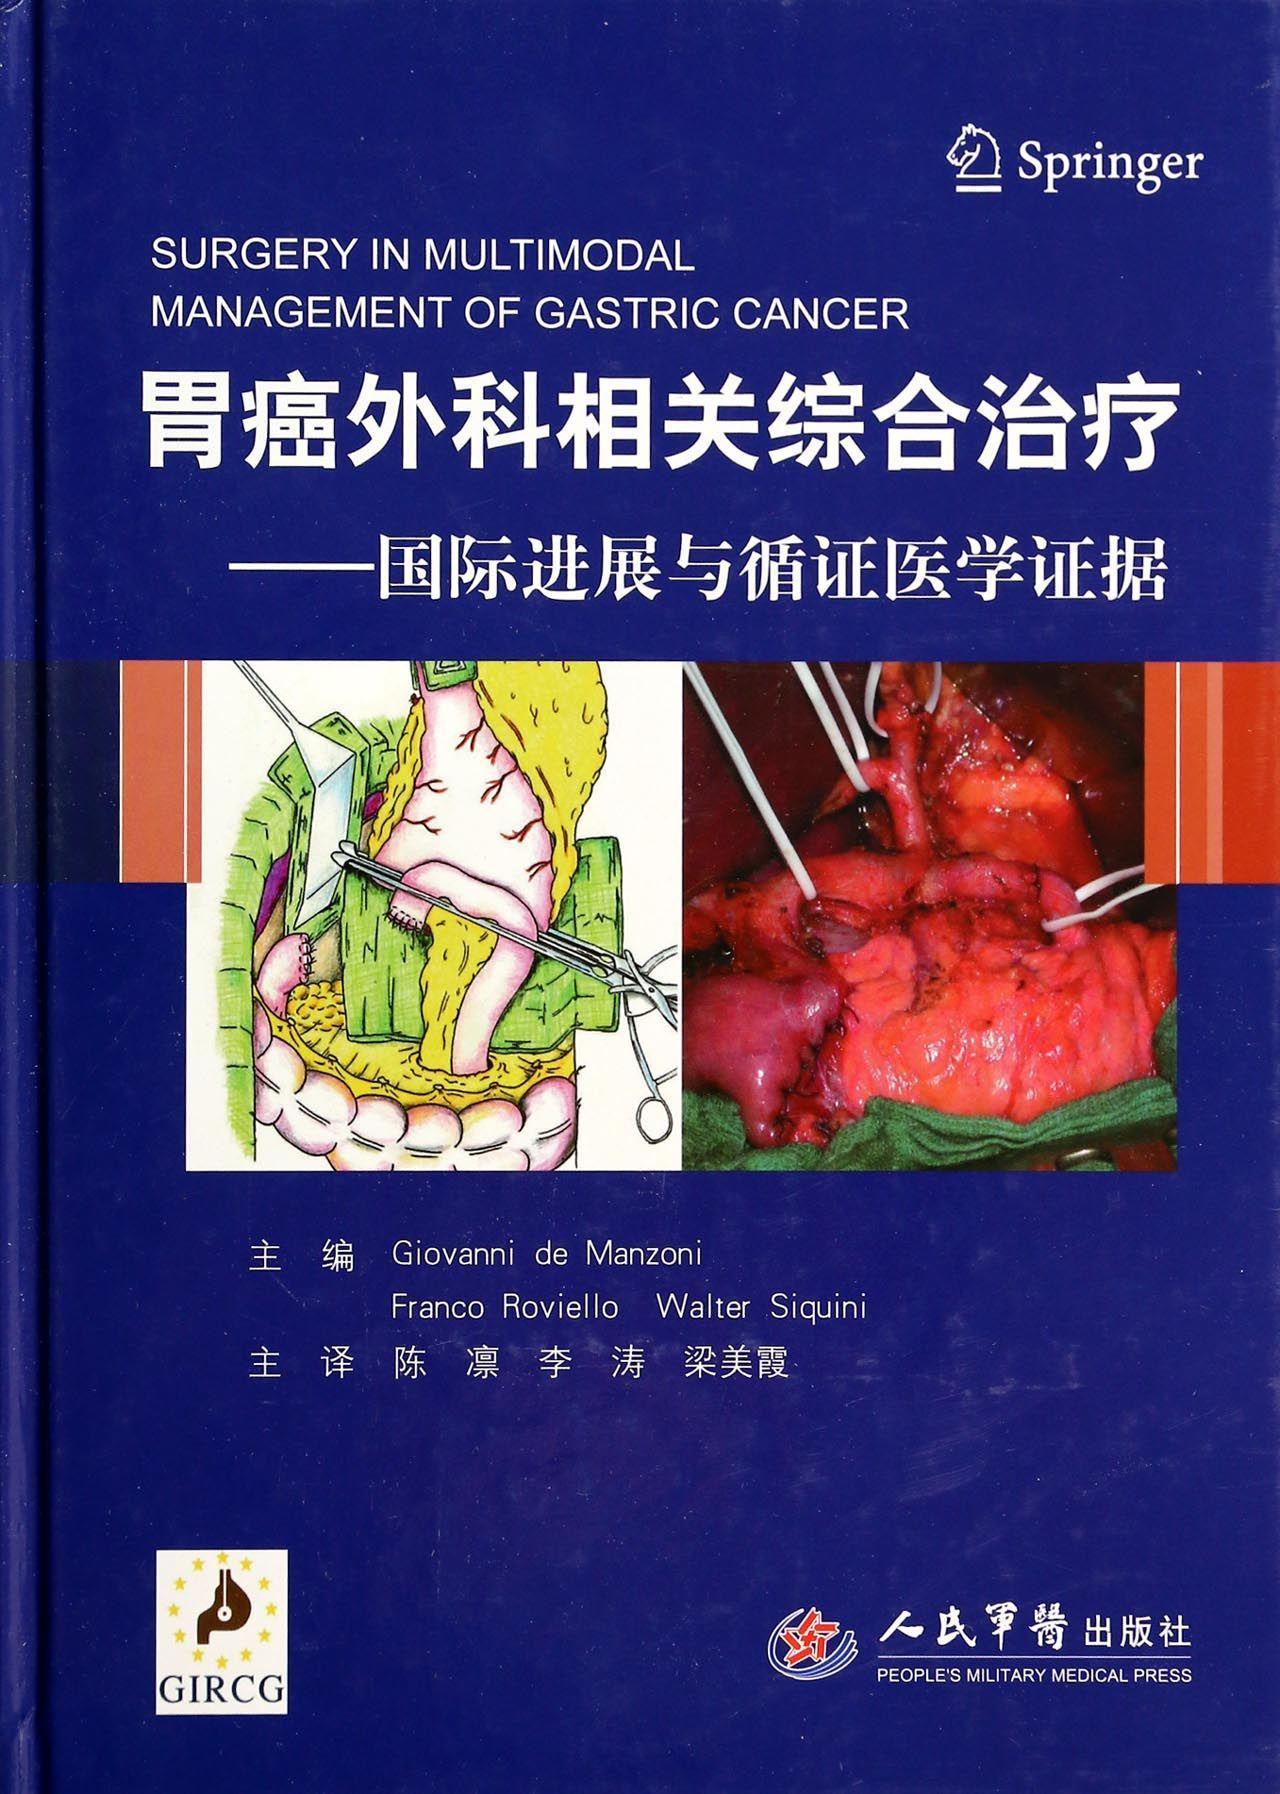 胃癌外科相关综合:进展与循证医学证据  胃癌外科手术 医药卫生书籍